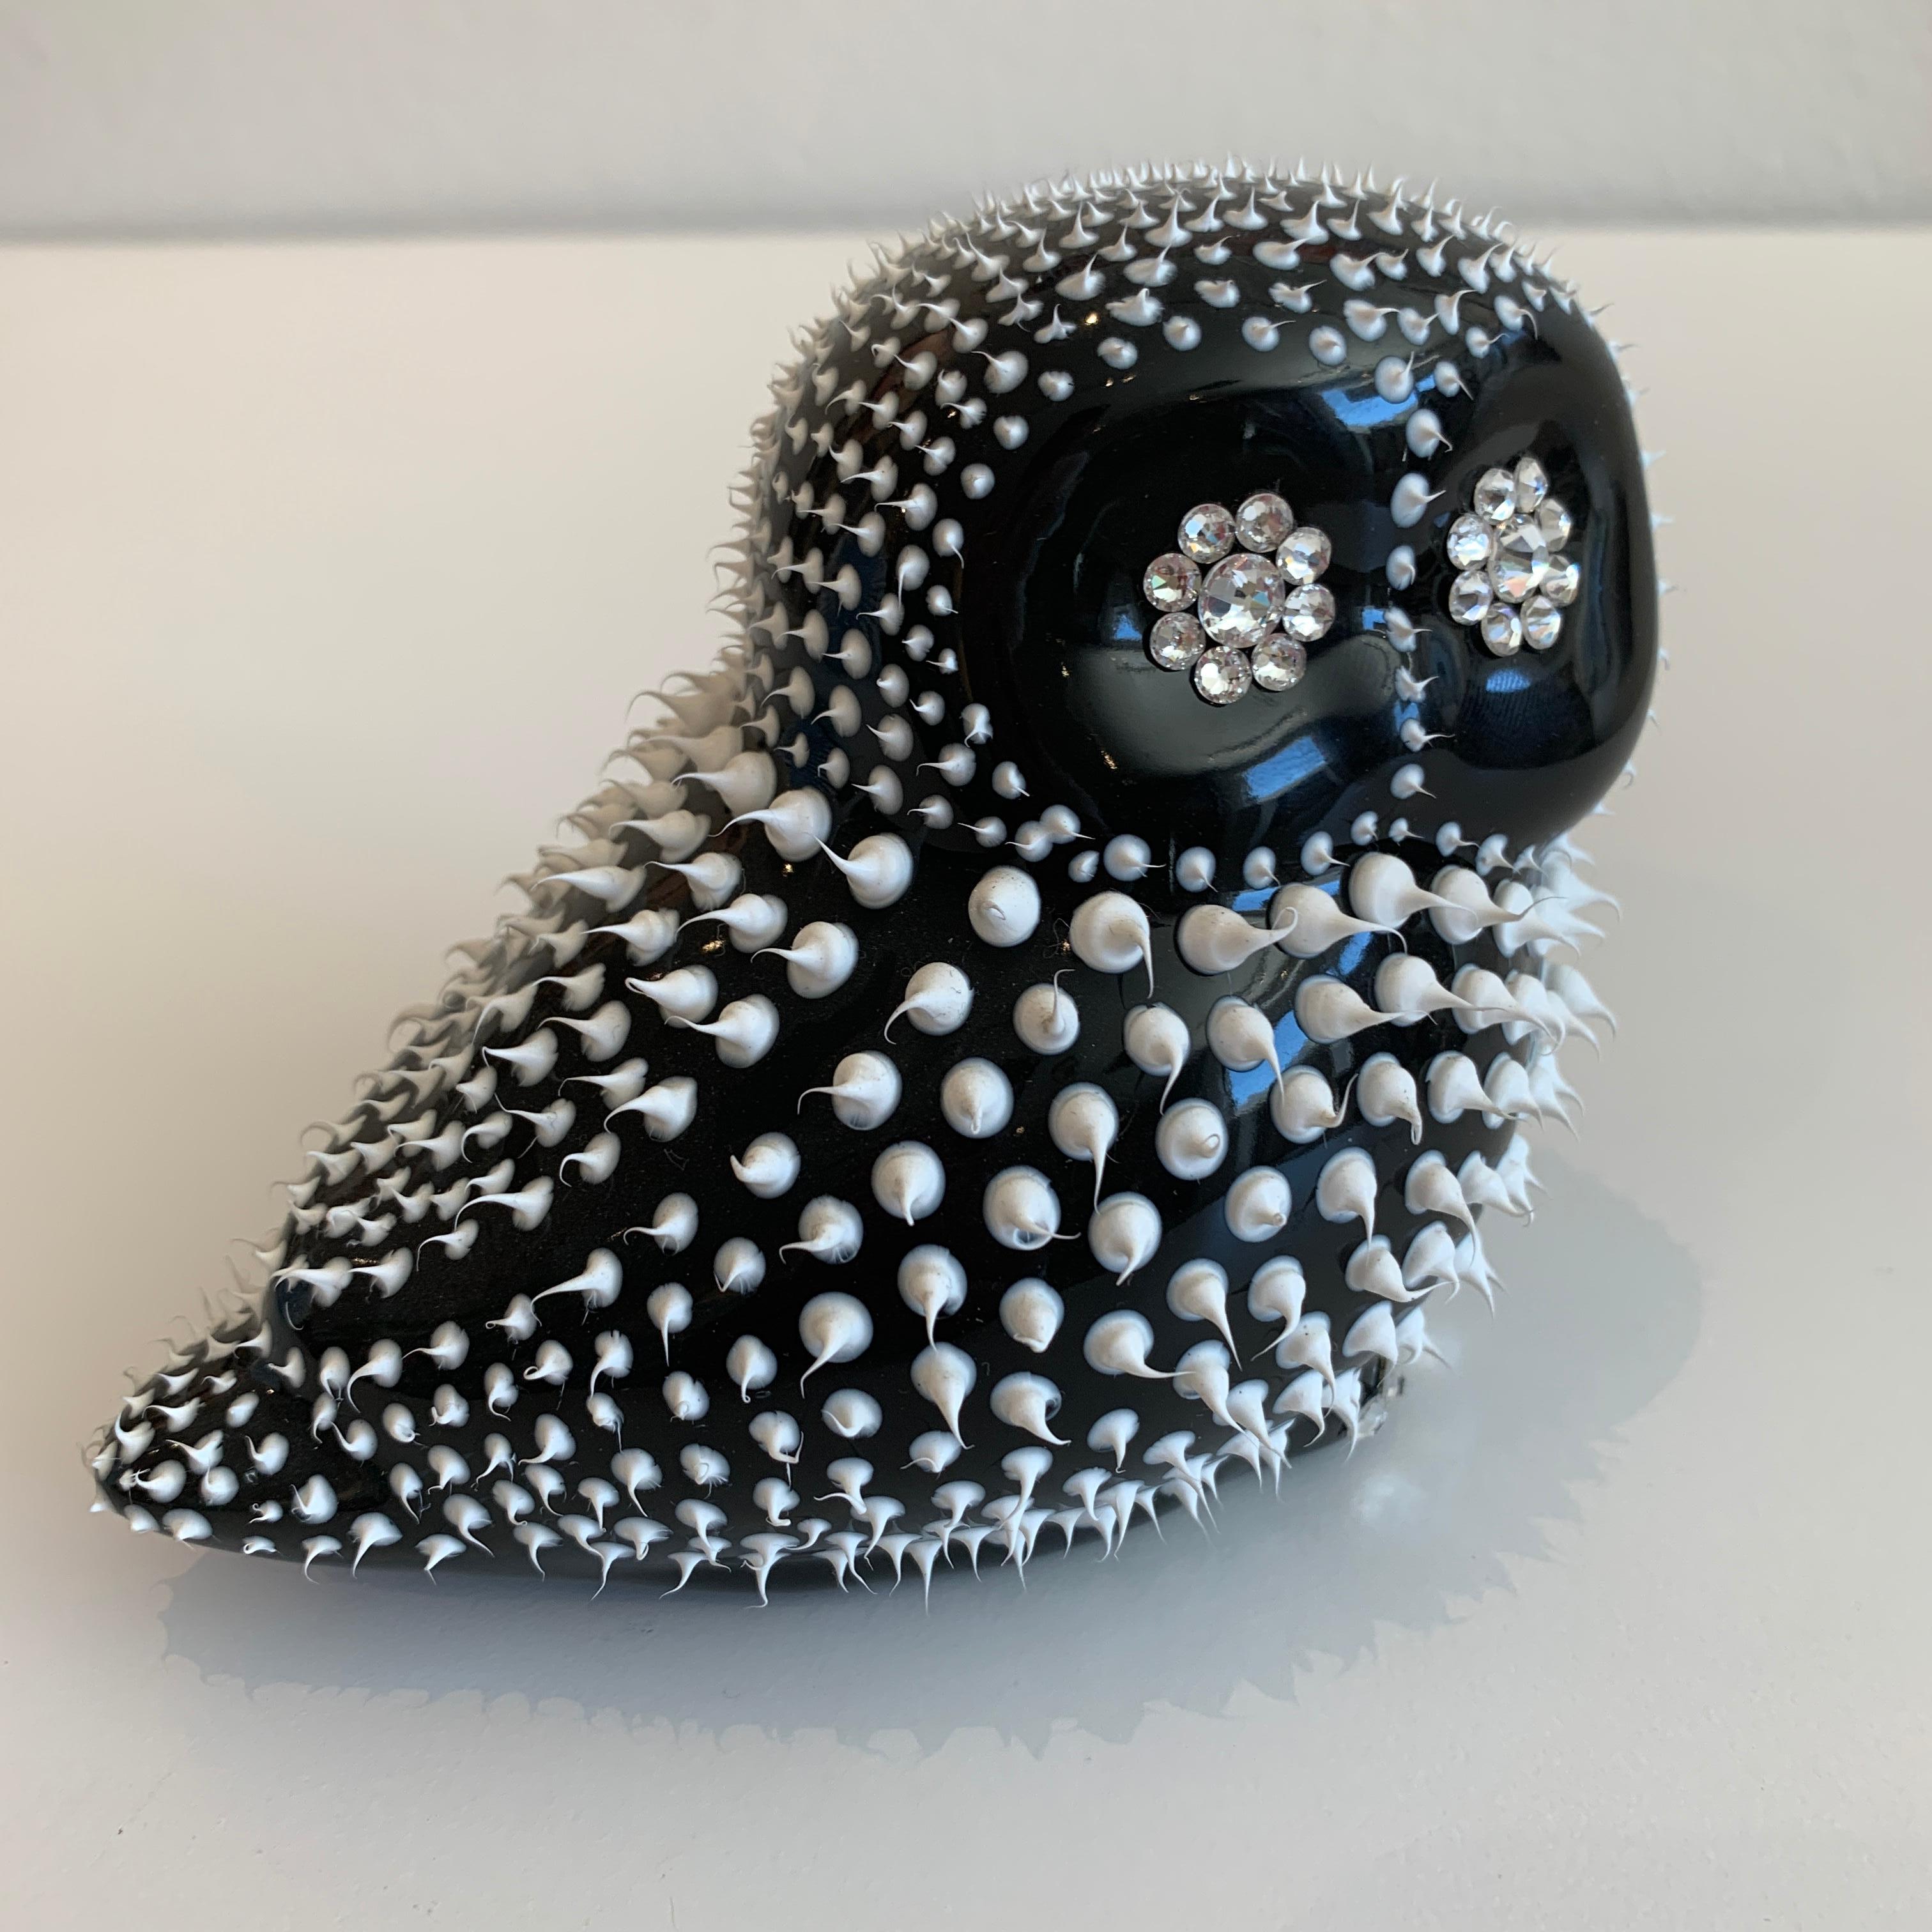 Eddy Maniez Figurative Sculpture - Eddie Maniez "Owl" Sculpture French Ceramic Silicone White Swarovski Crystal